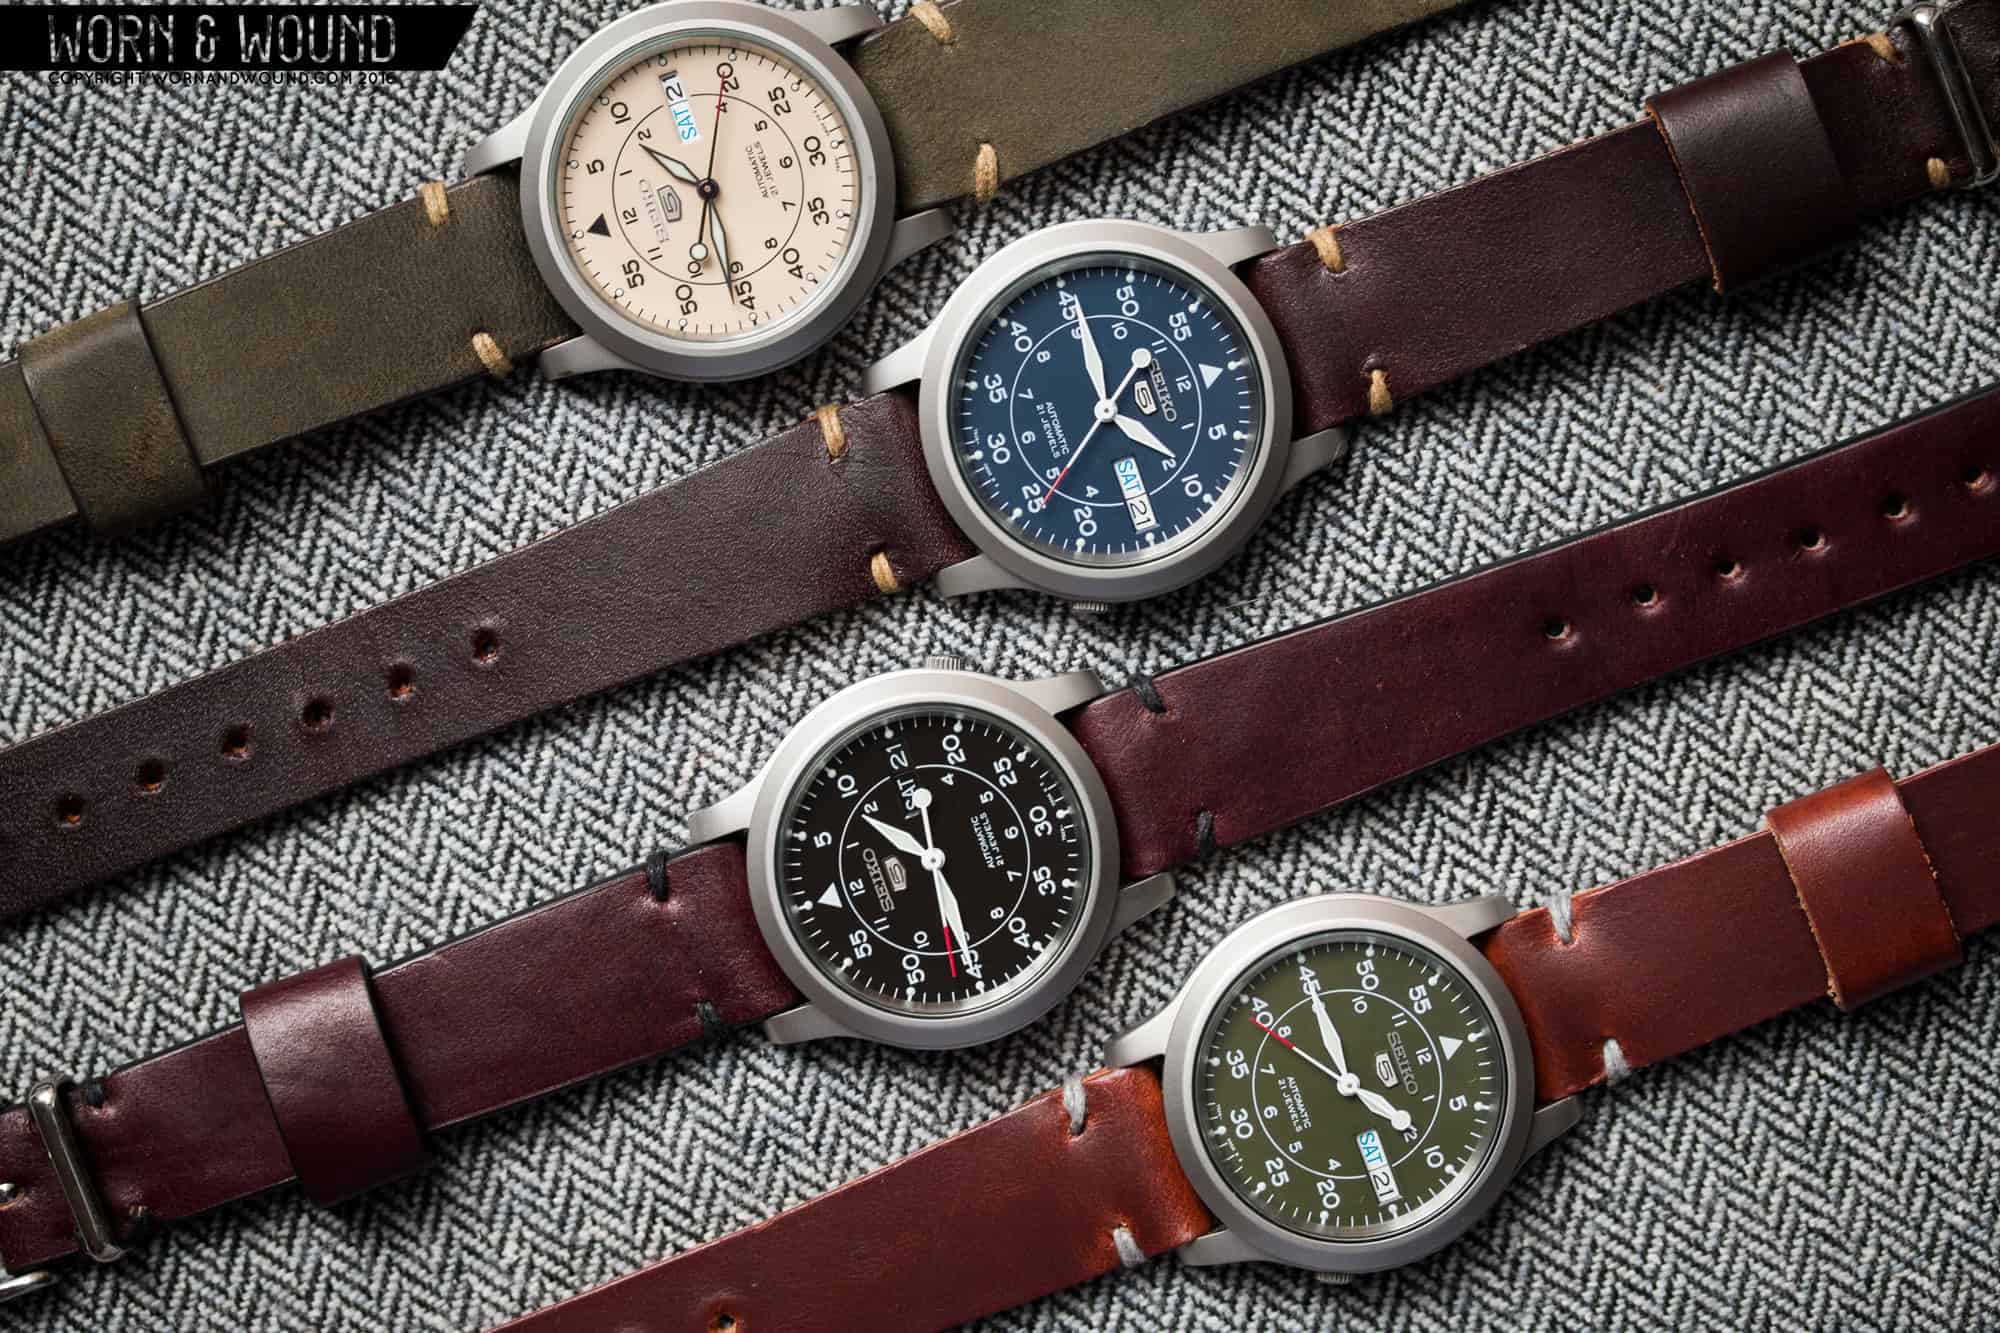 Five Great Seiko 5 Watches for Under $200 - Worn & Wound